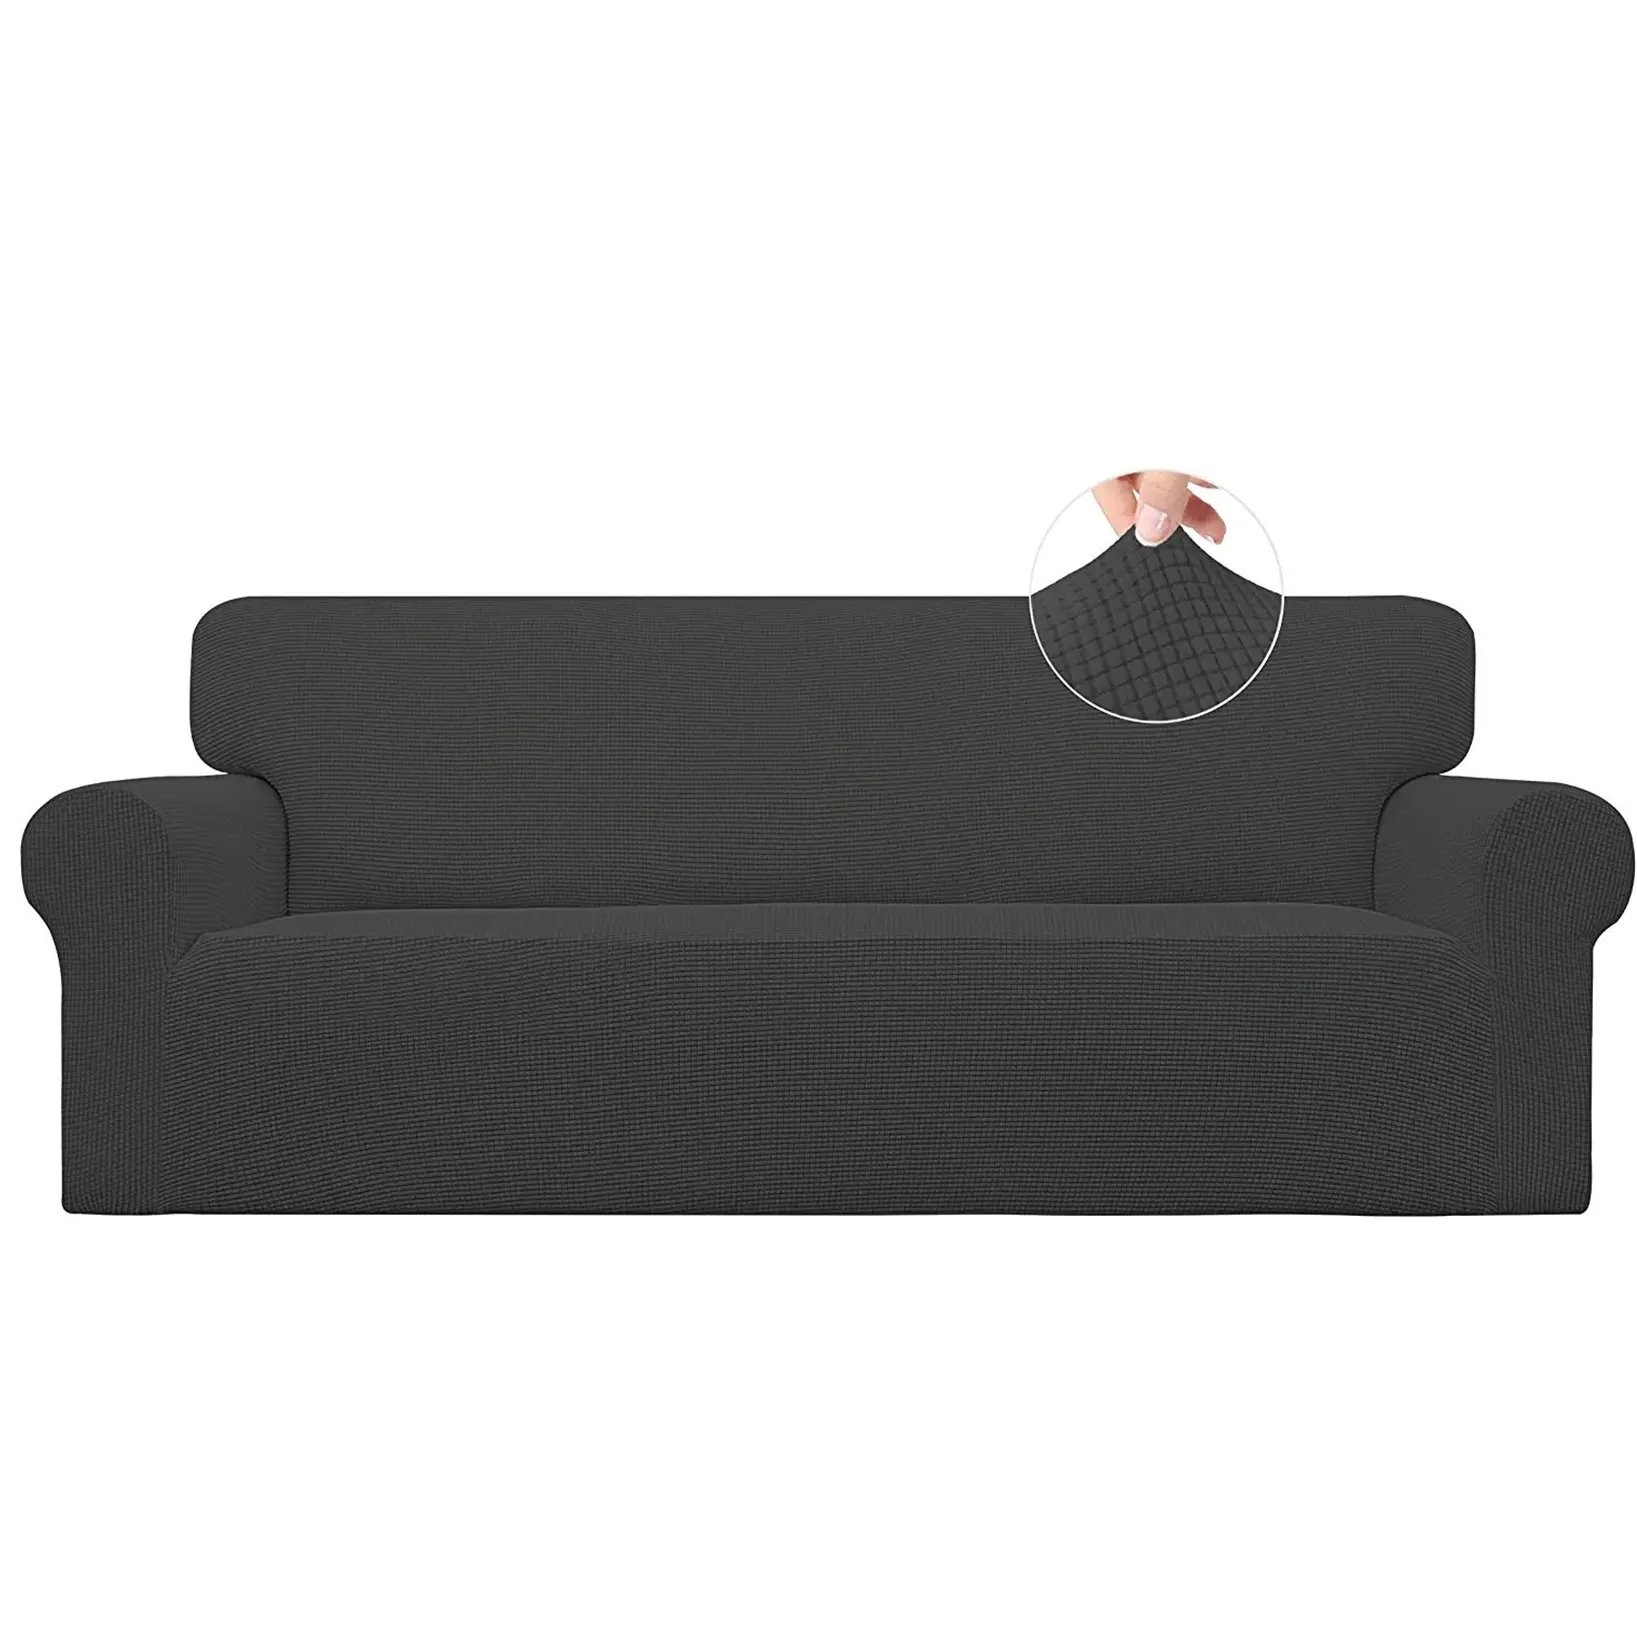 Poliestere elasticizzato Jacquard quadri protezione per mobili divano morbido copridivano con fondo elastico